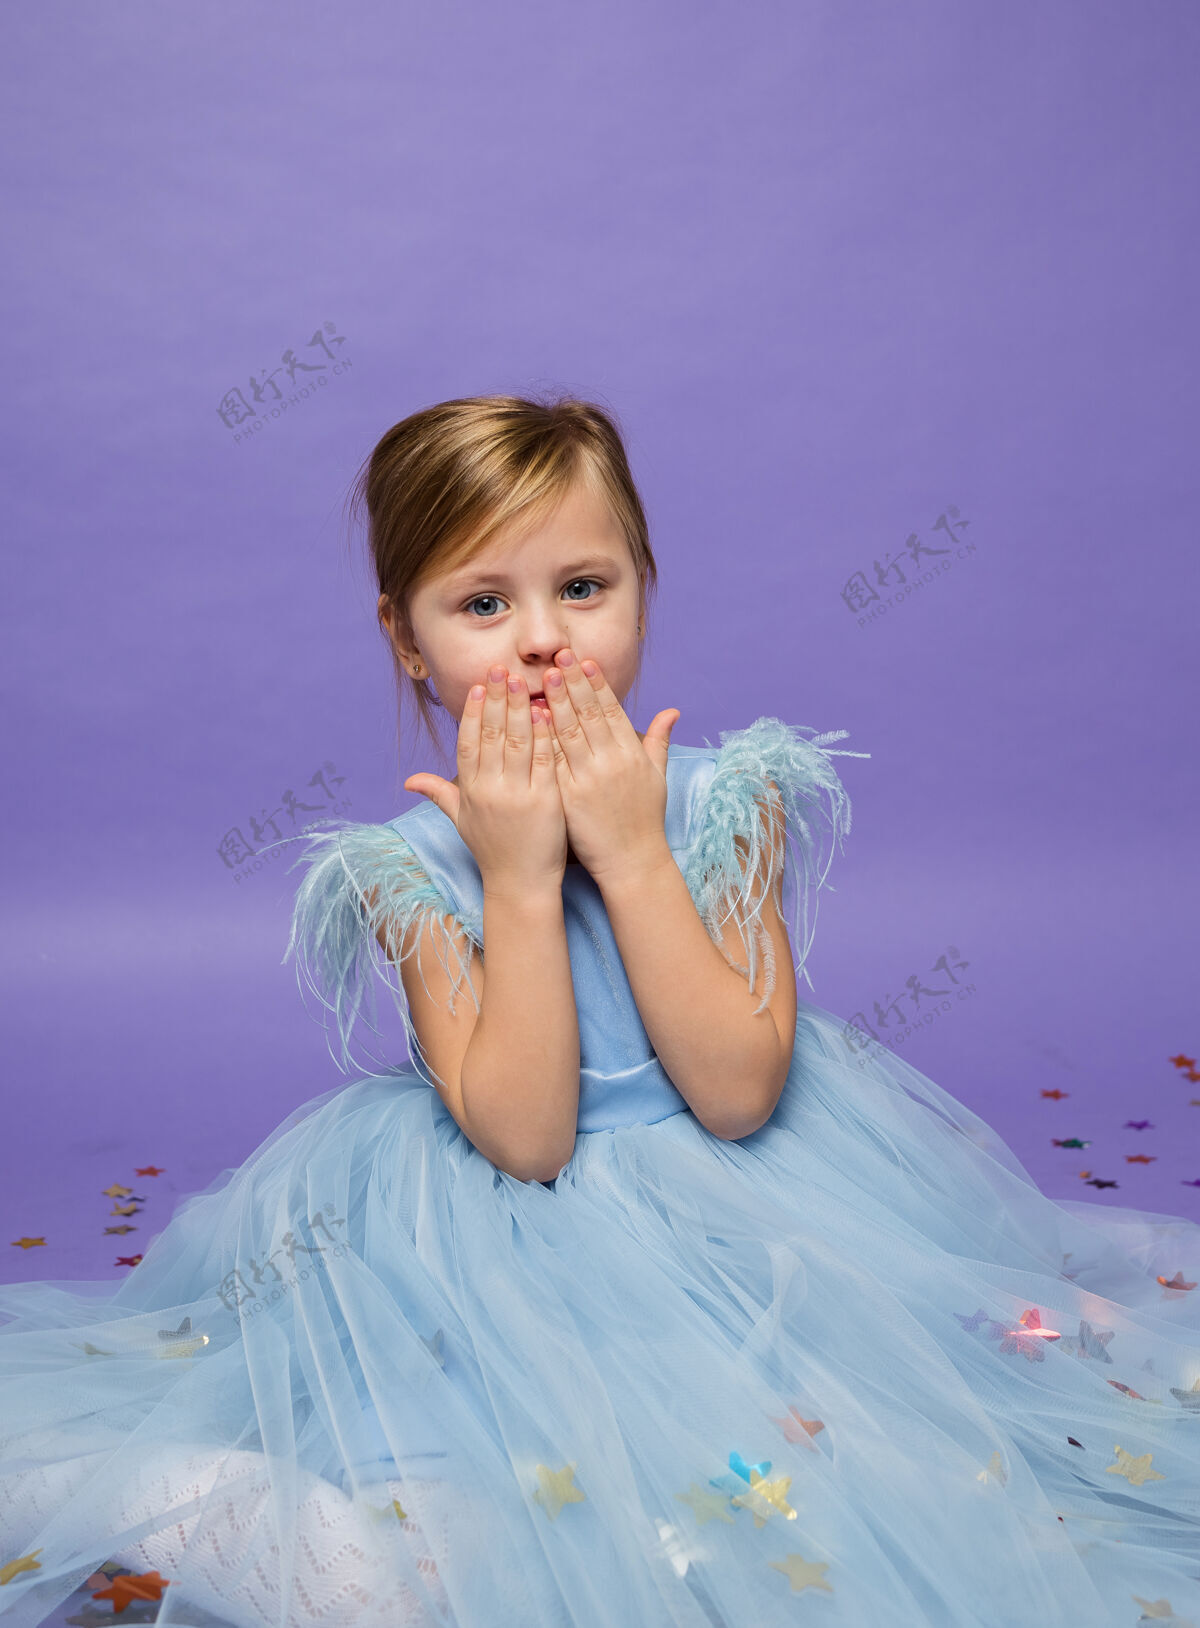 蓬松一个穿着郁郁葱葱的蓝色裙子的漂亮小女孩在紫色上吹了一个吻公主装丁香空中之吻